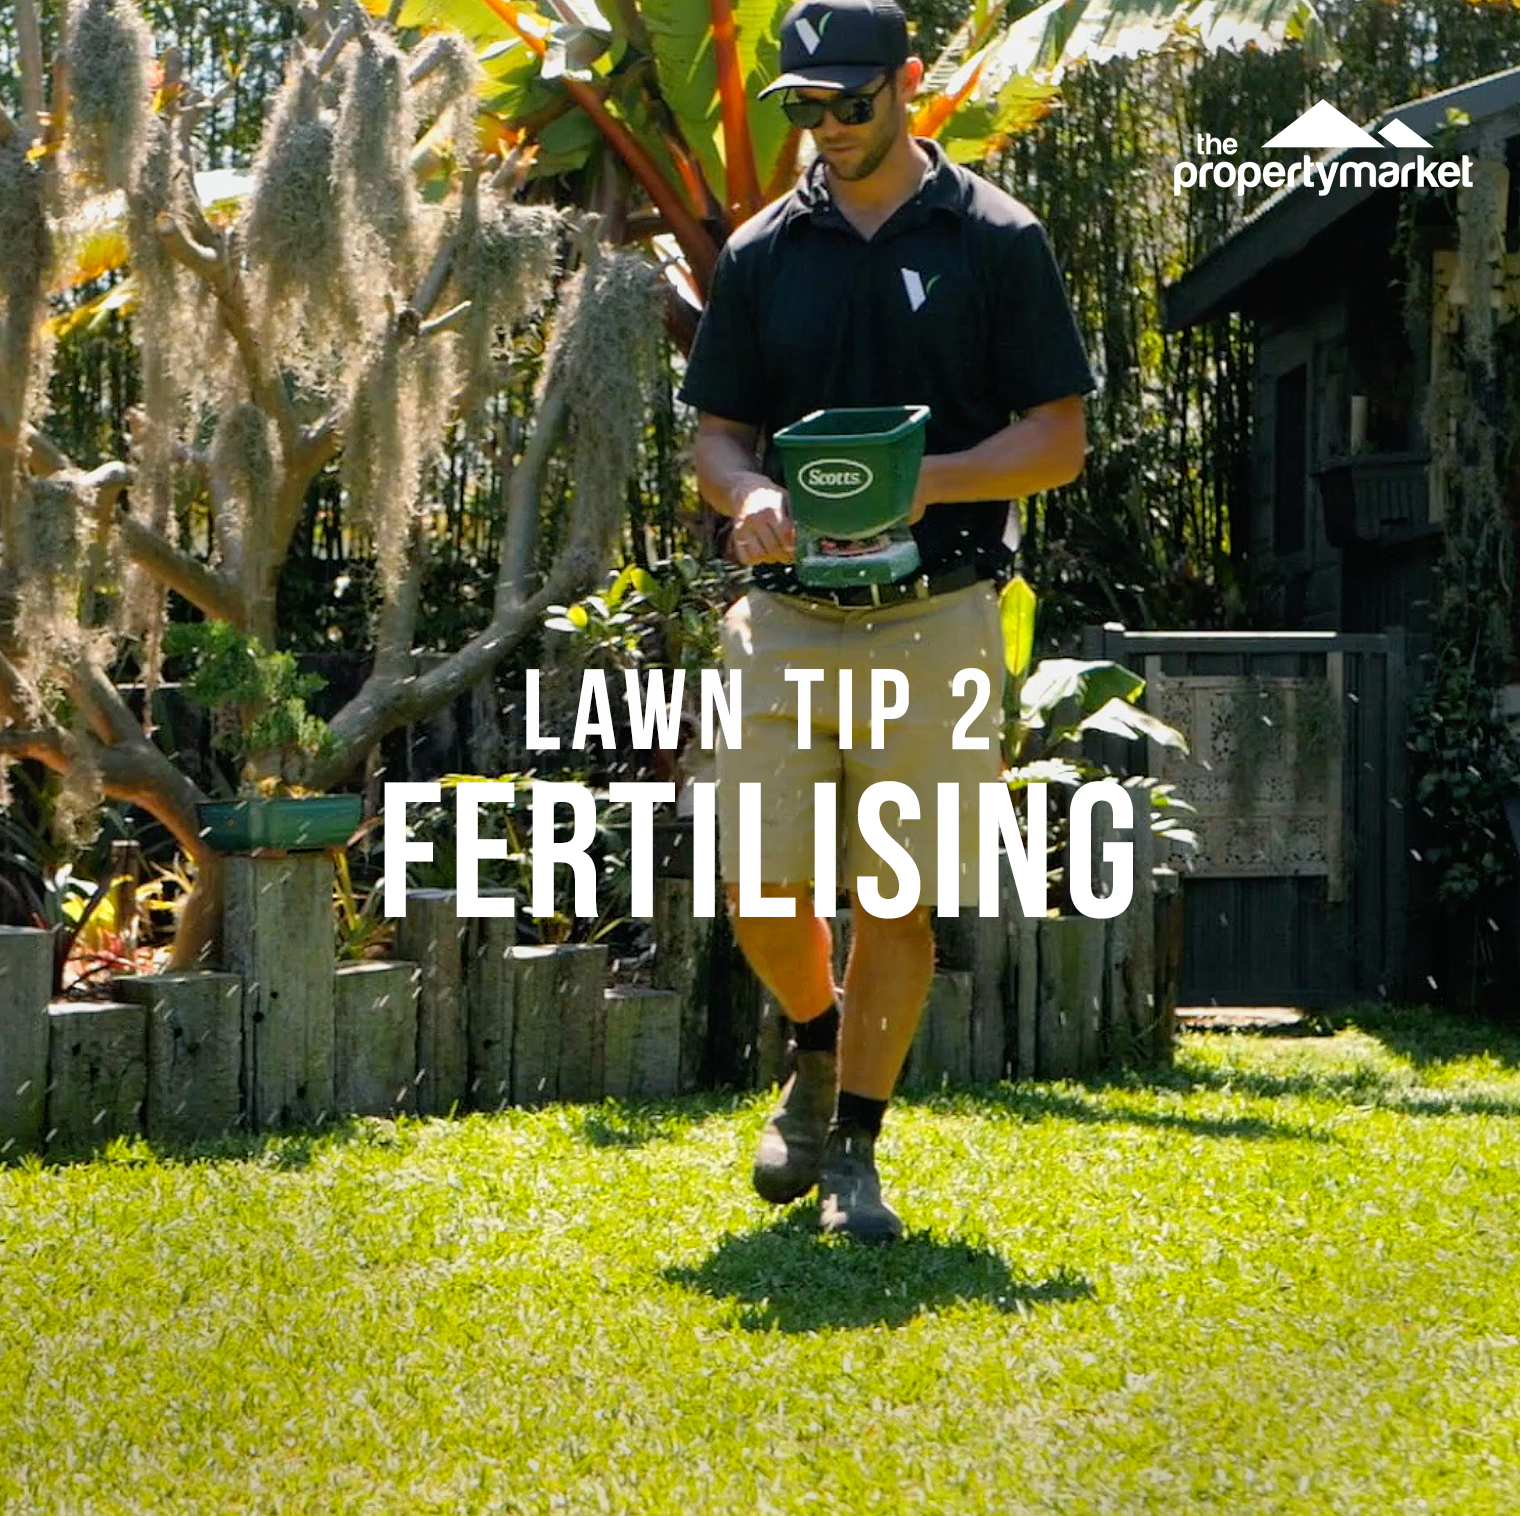 Lush lawn tip 2: fertilising